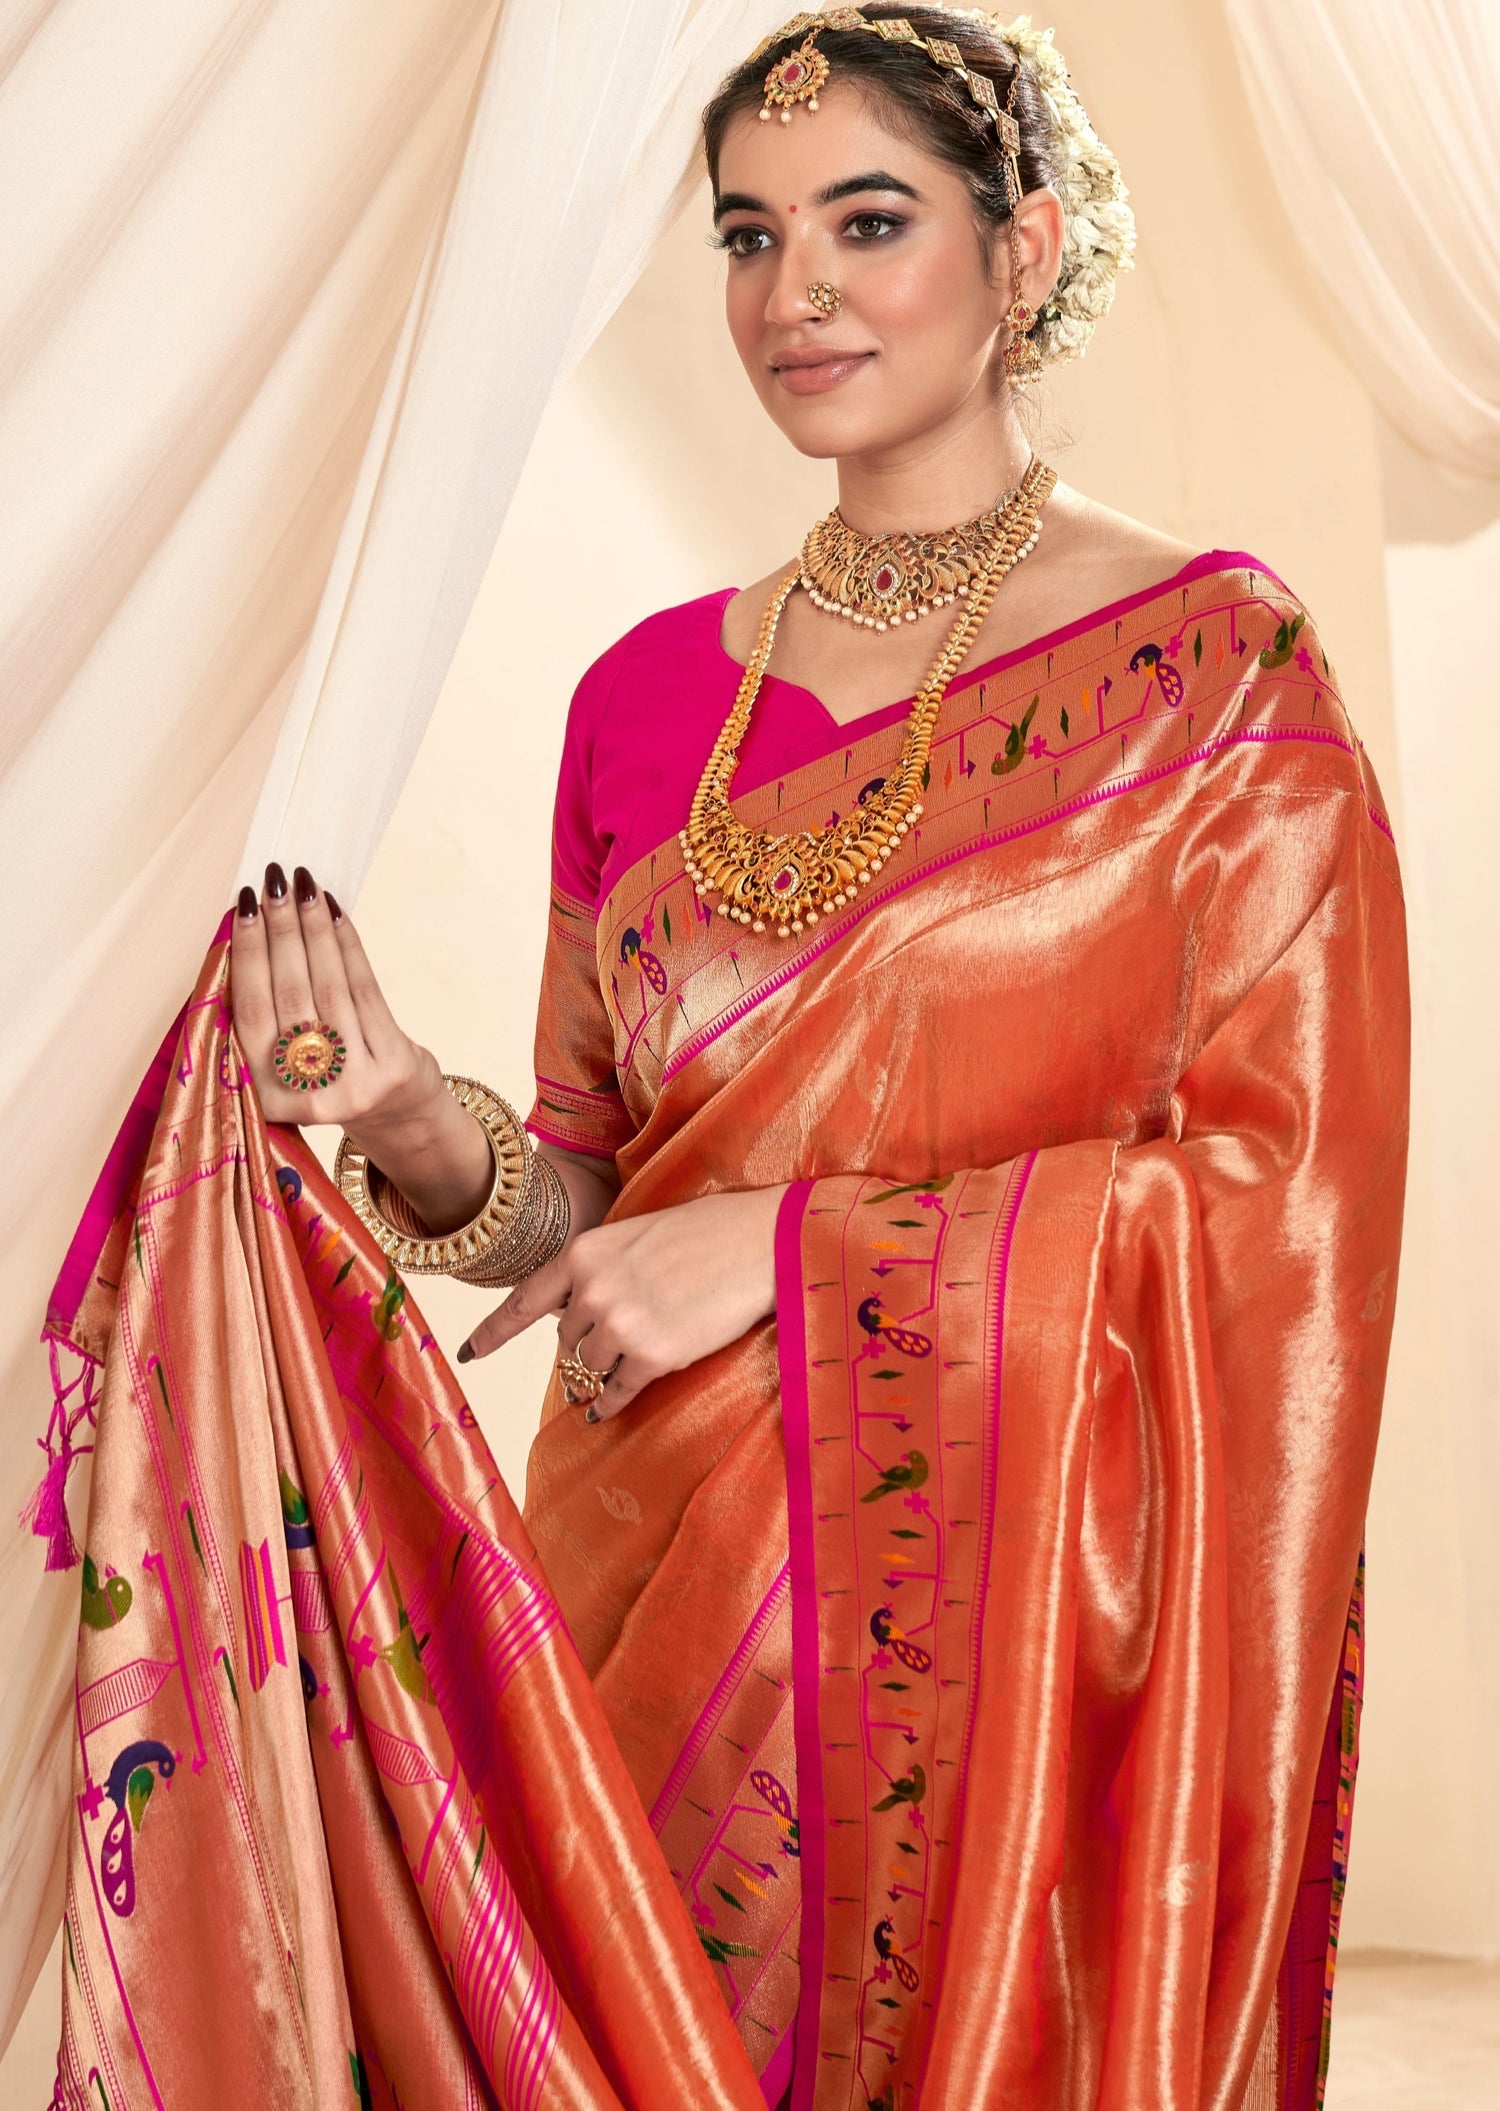 Handloom paithani tissue silk peach bridal saree online shopping for bride.